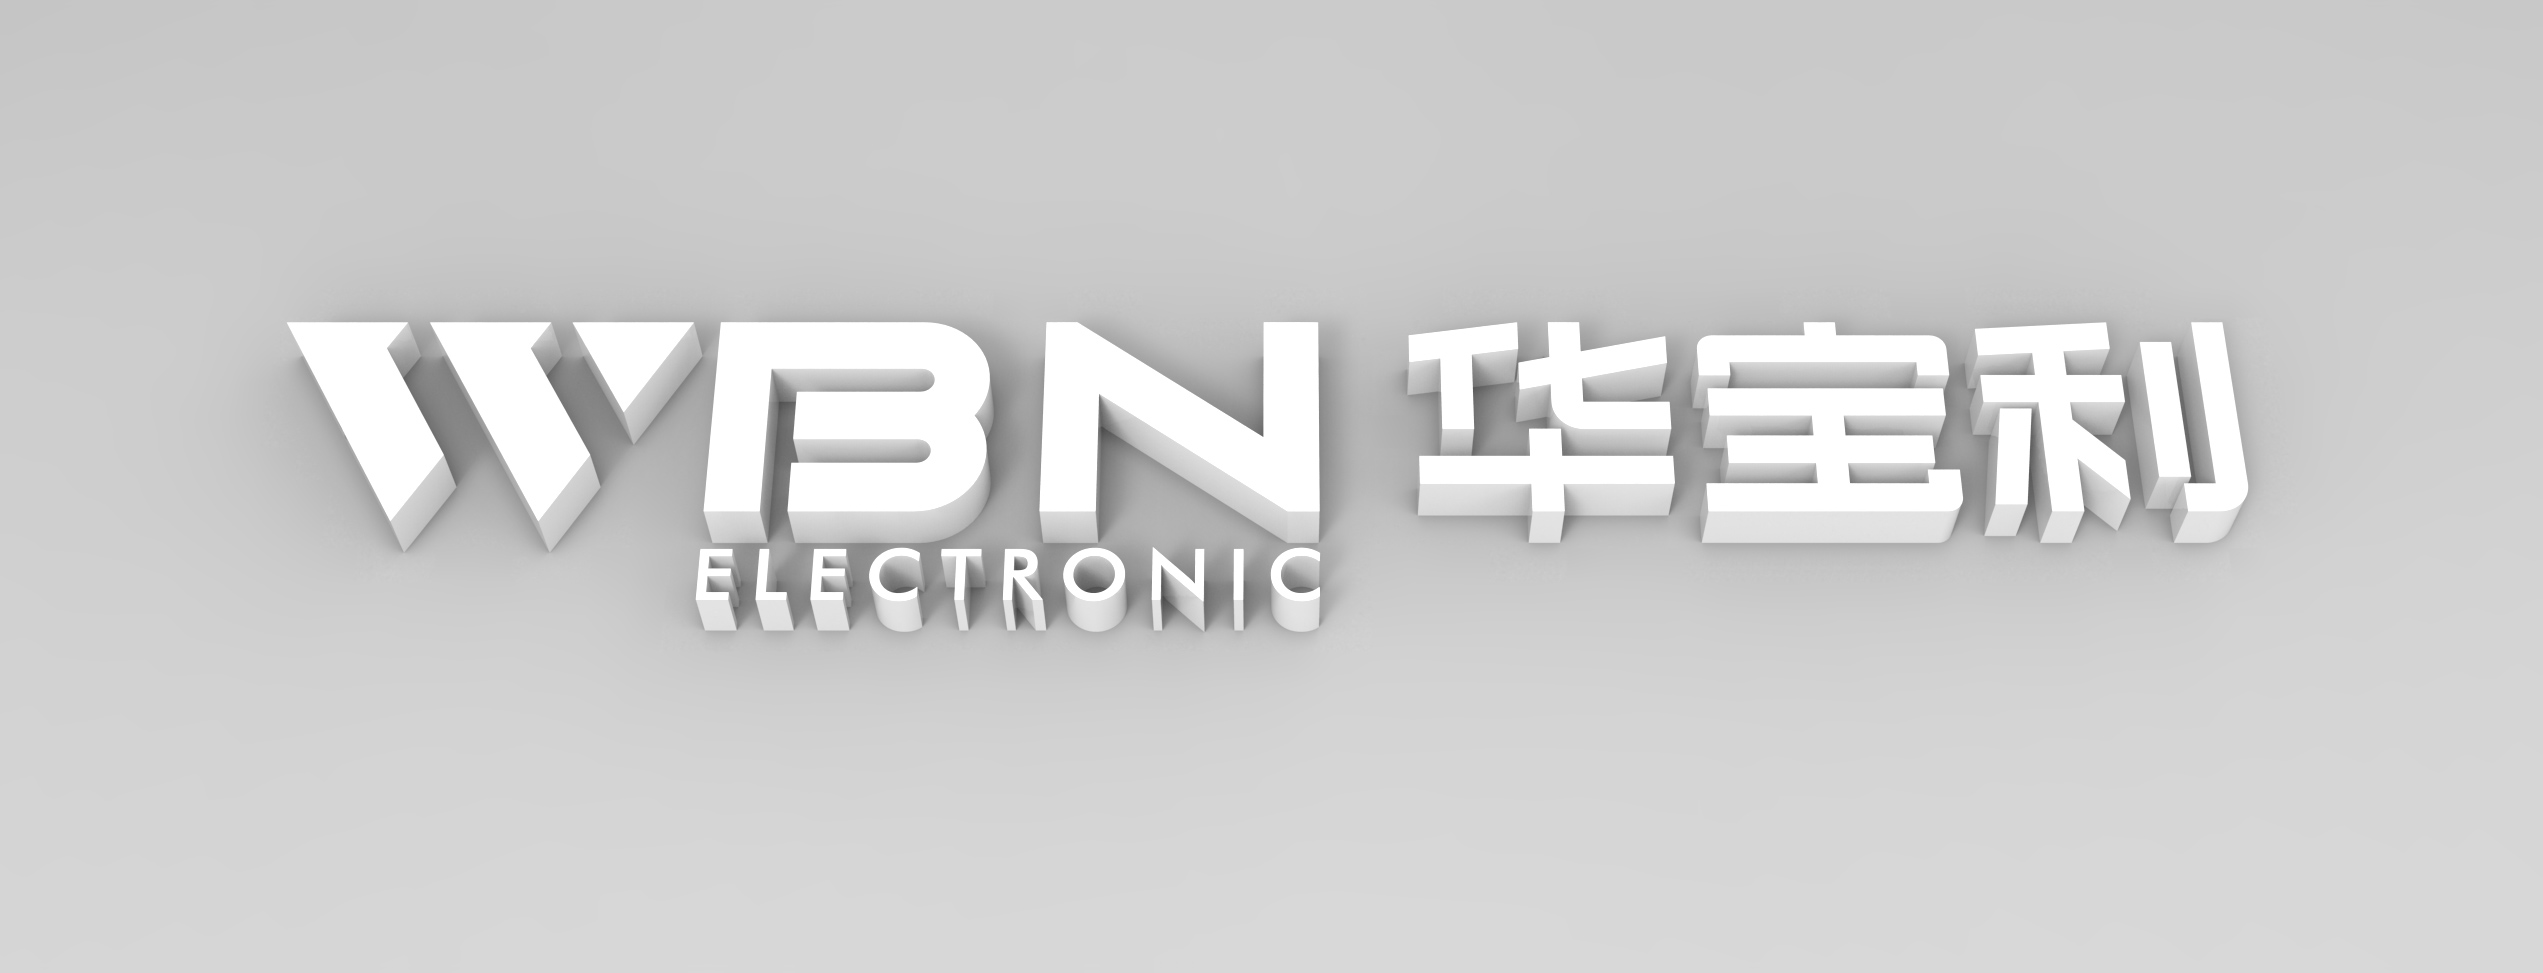 WBN电子科技元器件制造企业商标平面设计